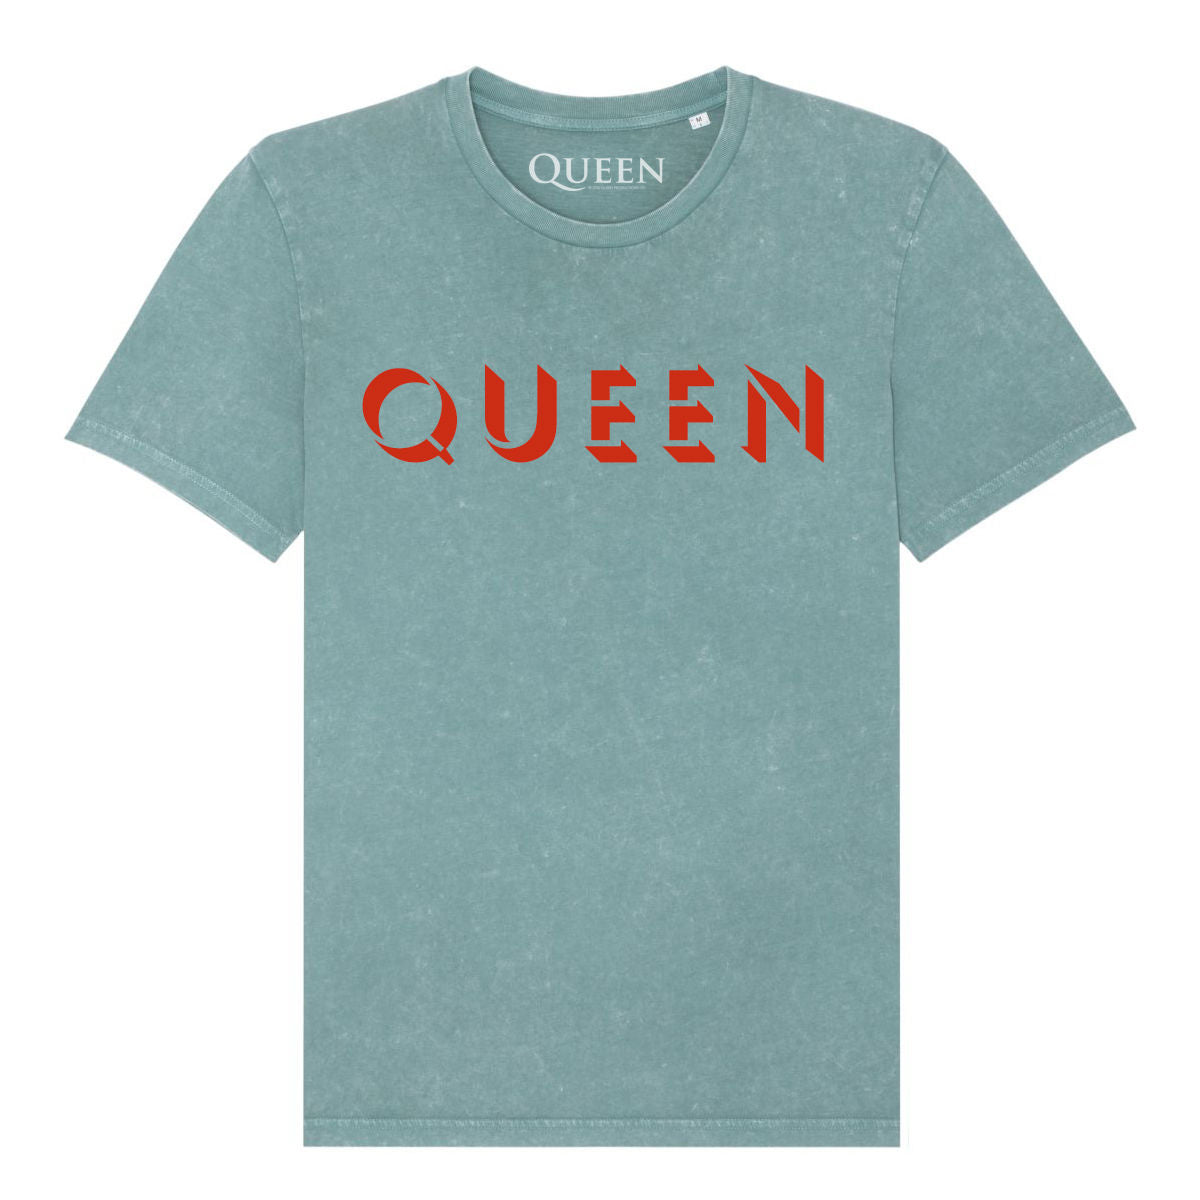 Queen - Queen We Will Rock You T-Shirt